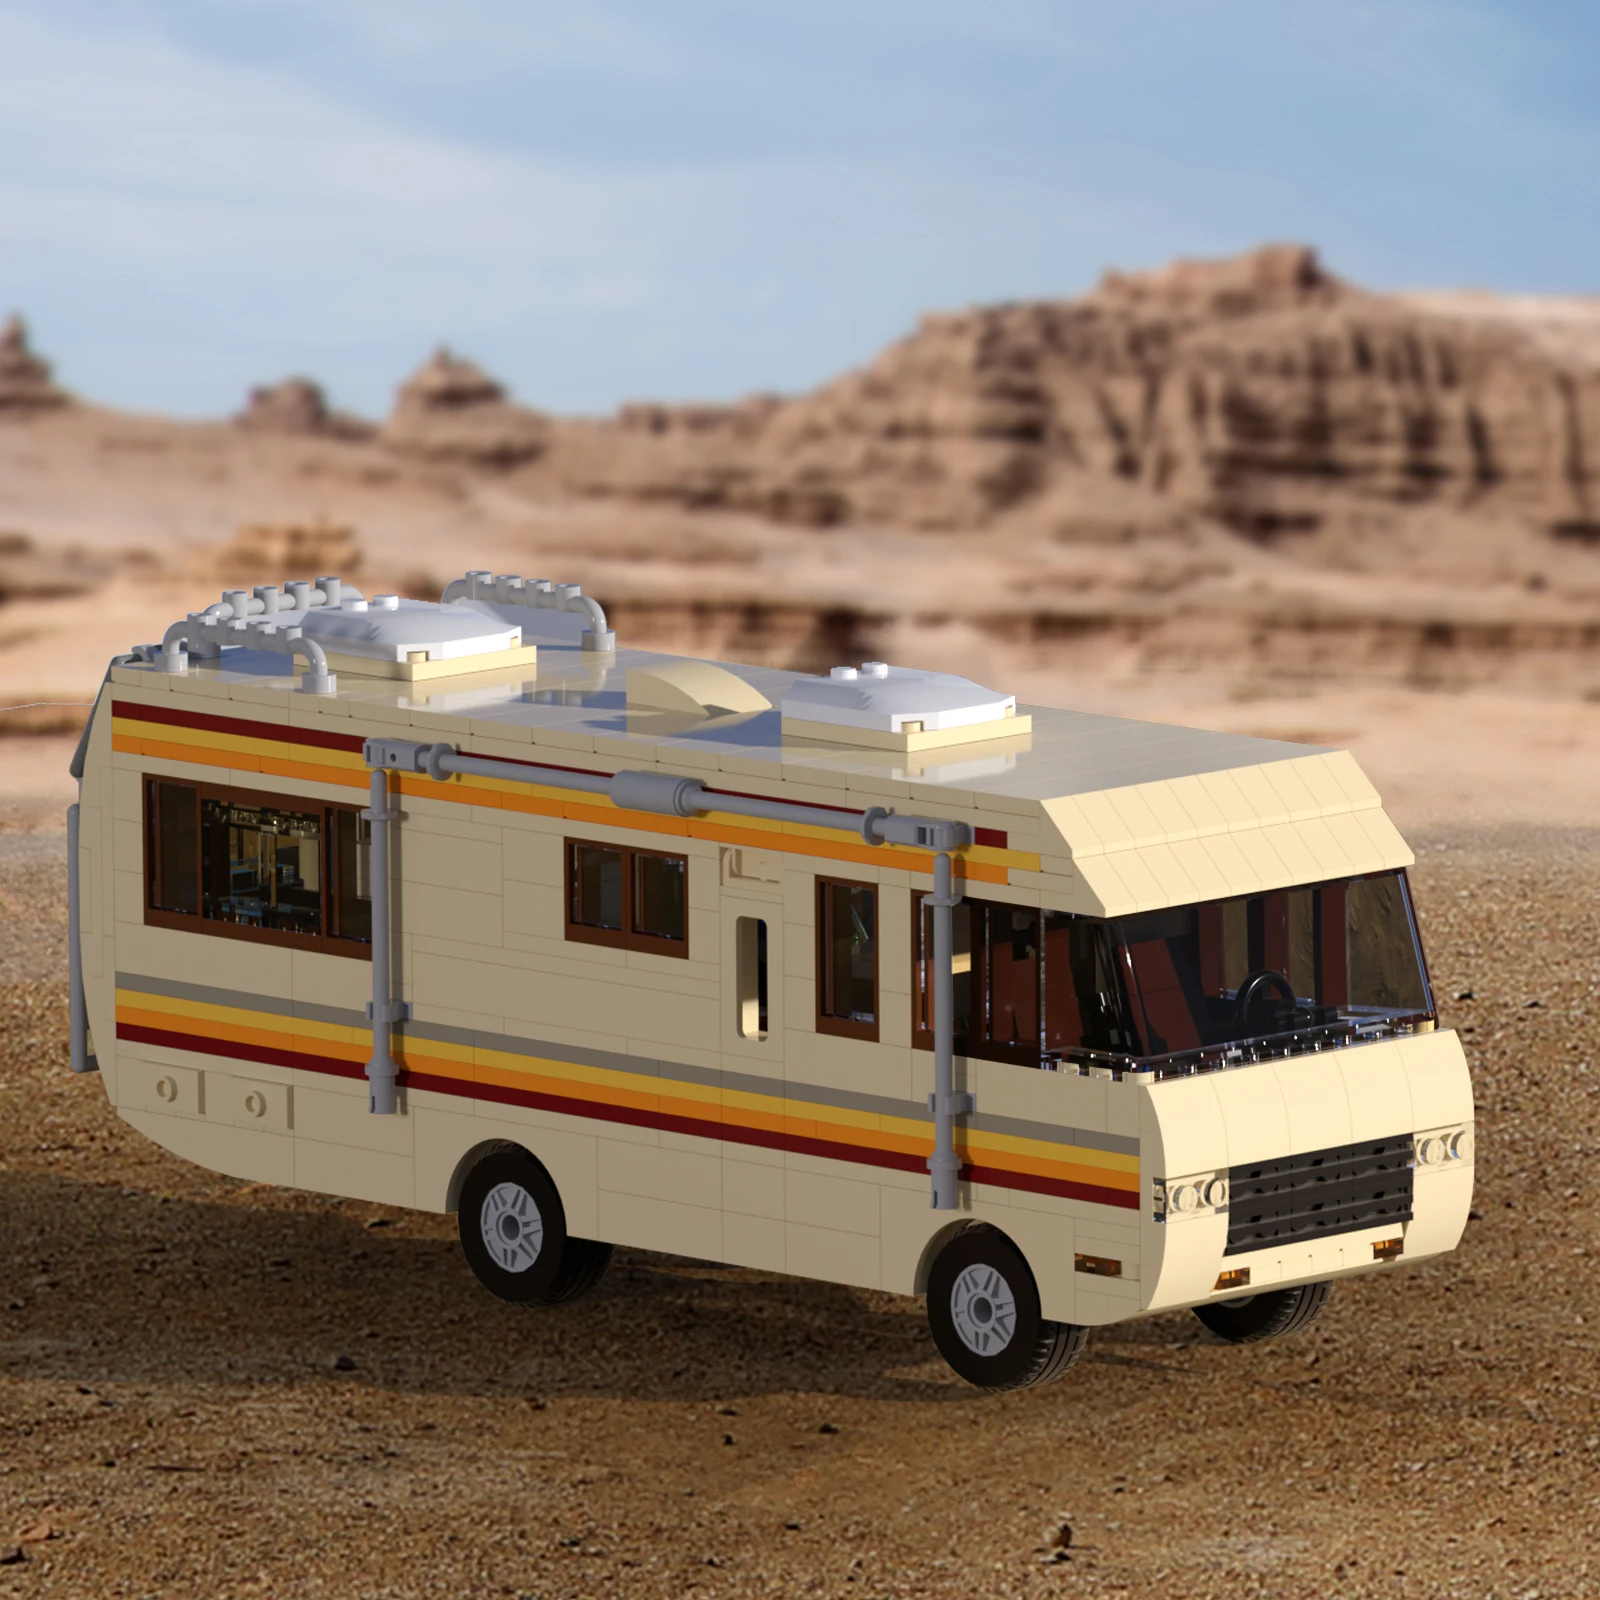 

MOC Moive Breaking Bad Van Vehicle Kit Walter White Pinkman Cooking Lab RV Car Building Blocks Set Toy Children Birthday Gift